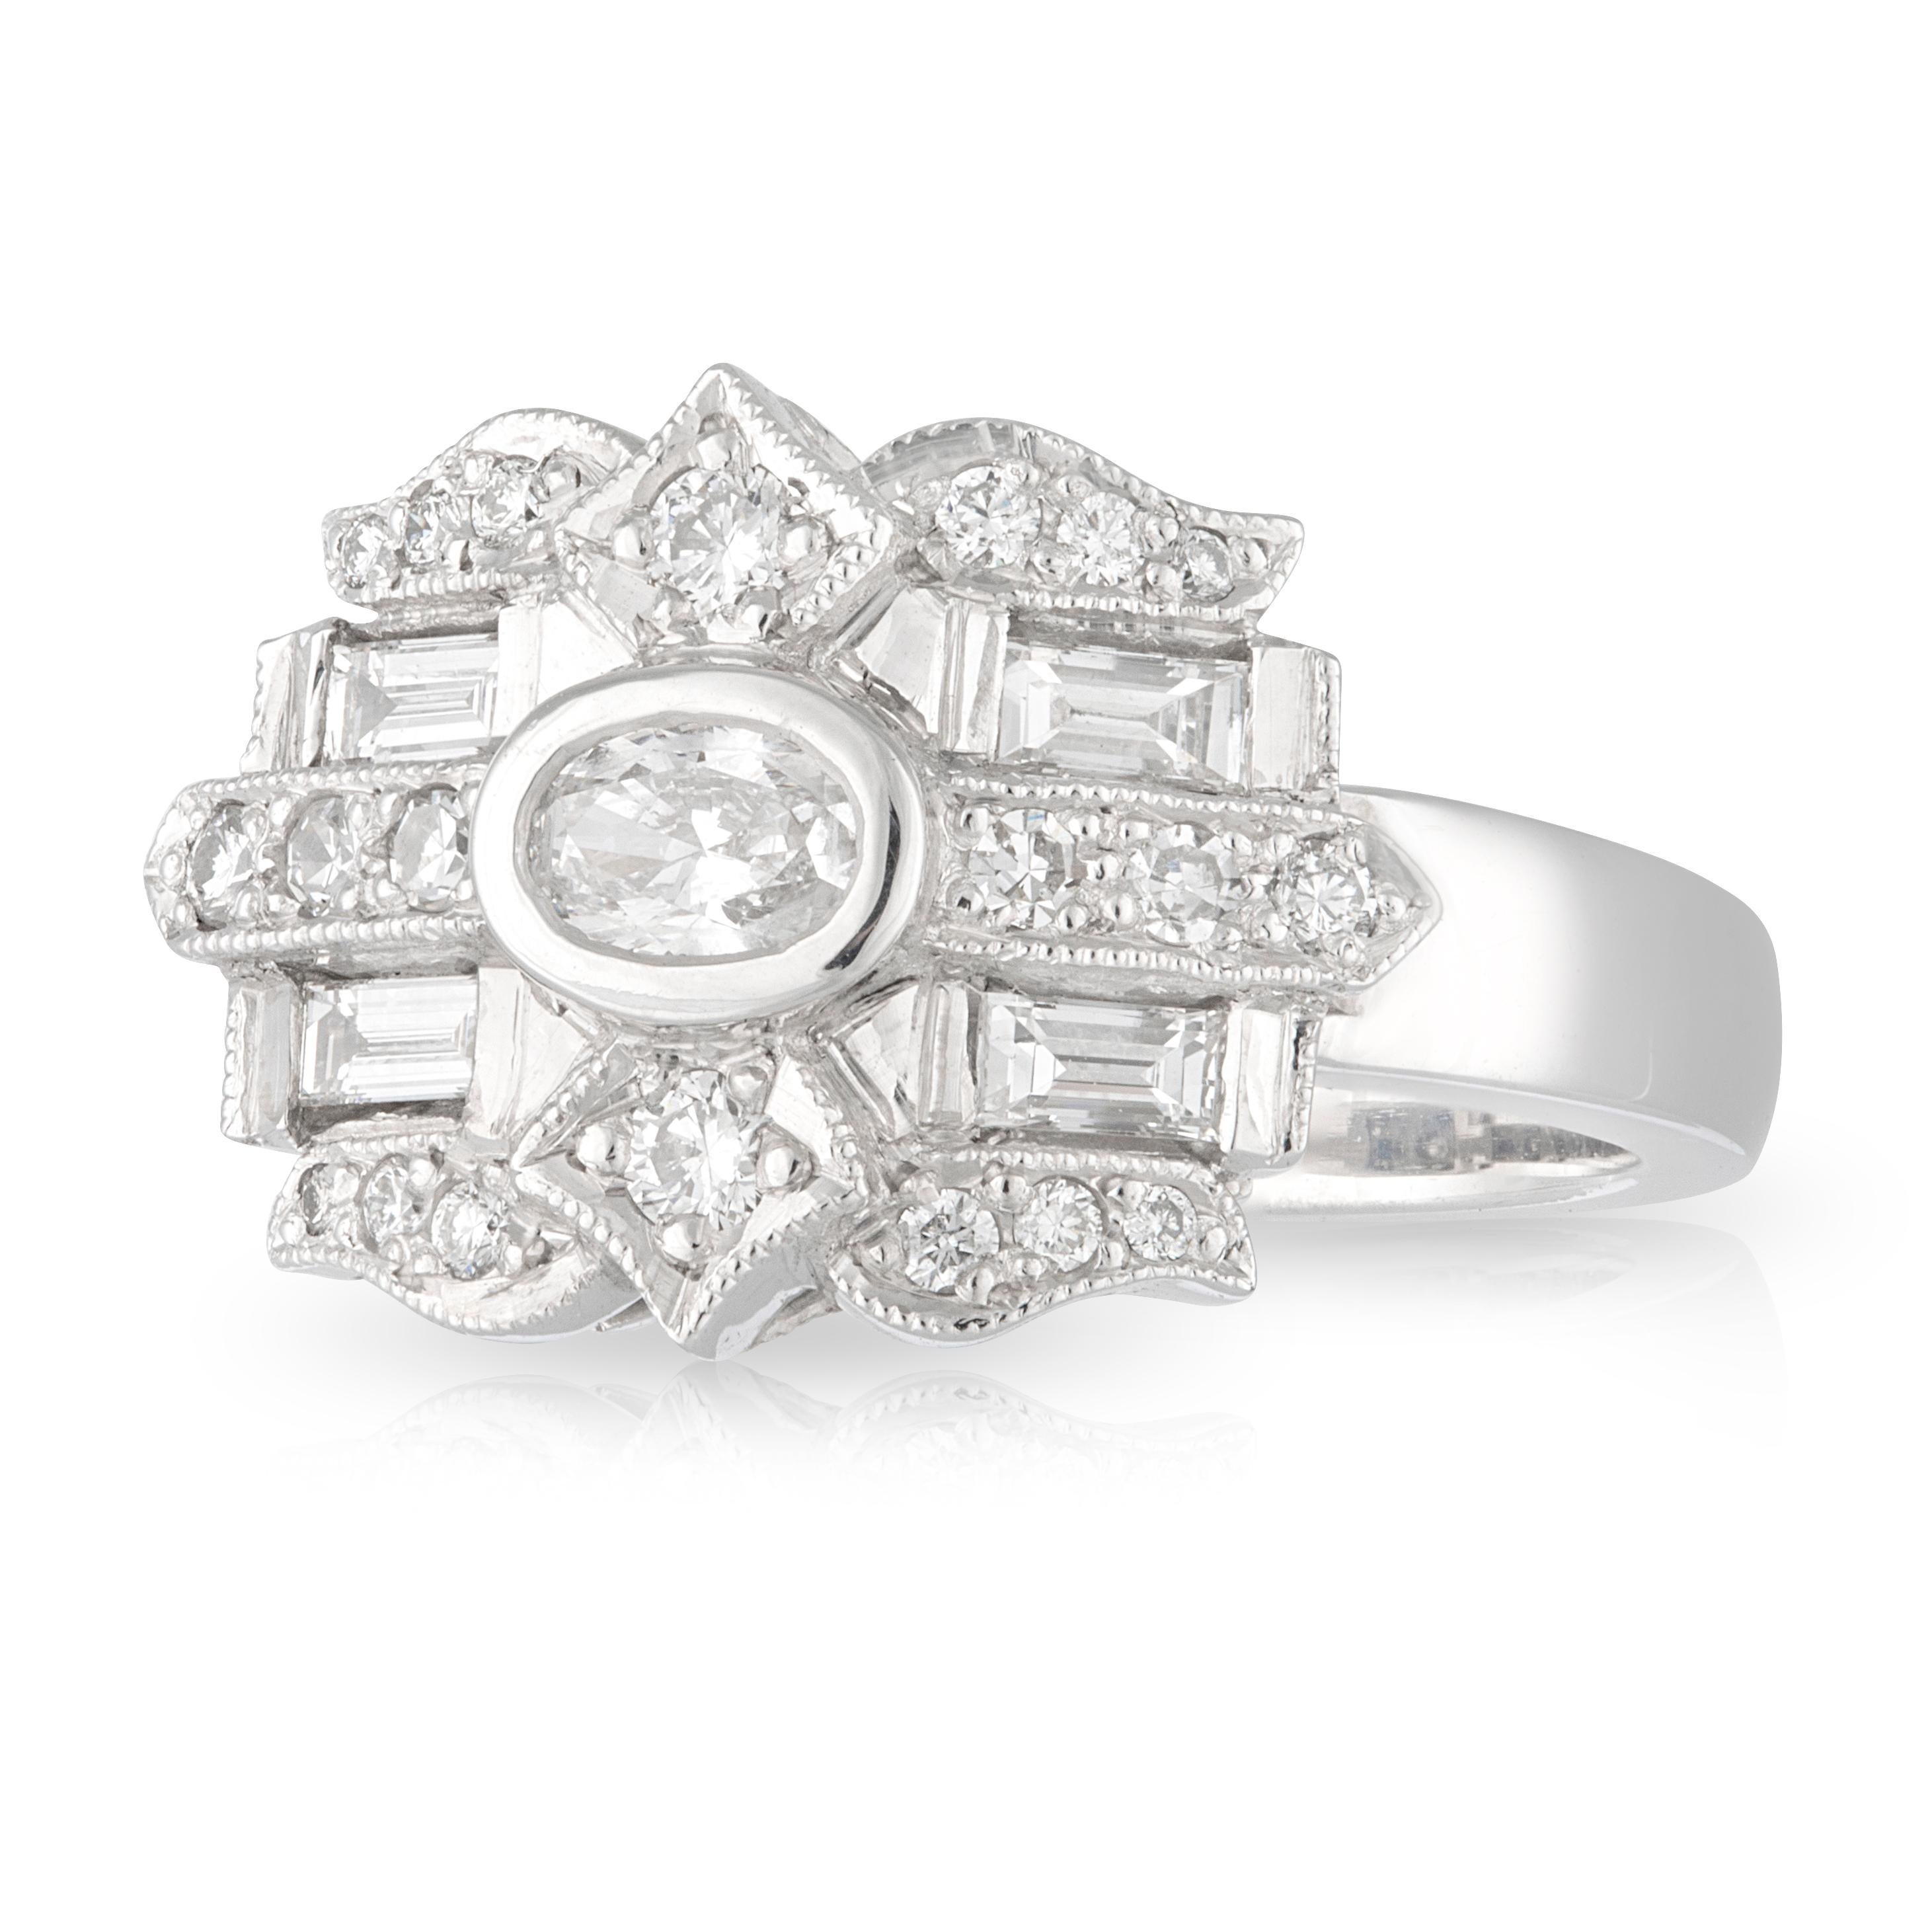 Handmade 18ct White Gold 'Sunset' Diamond Engagement Ring. TDW 0.715ct.